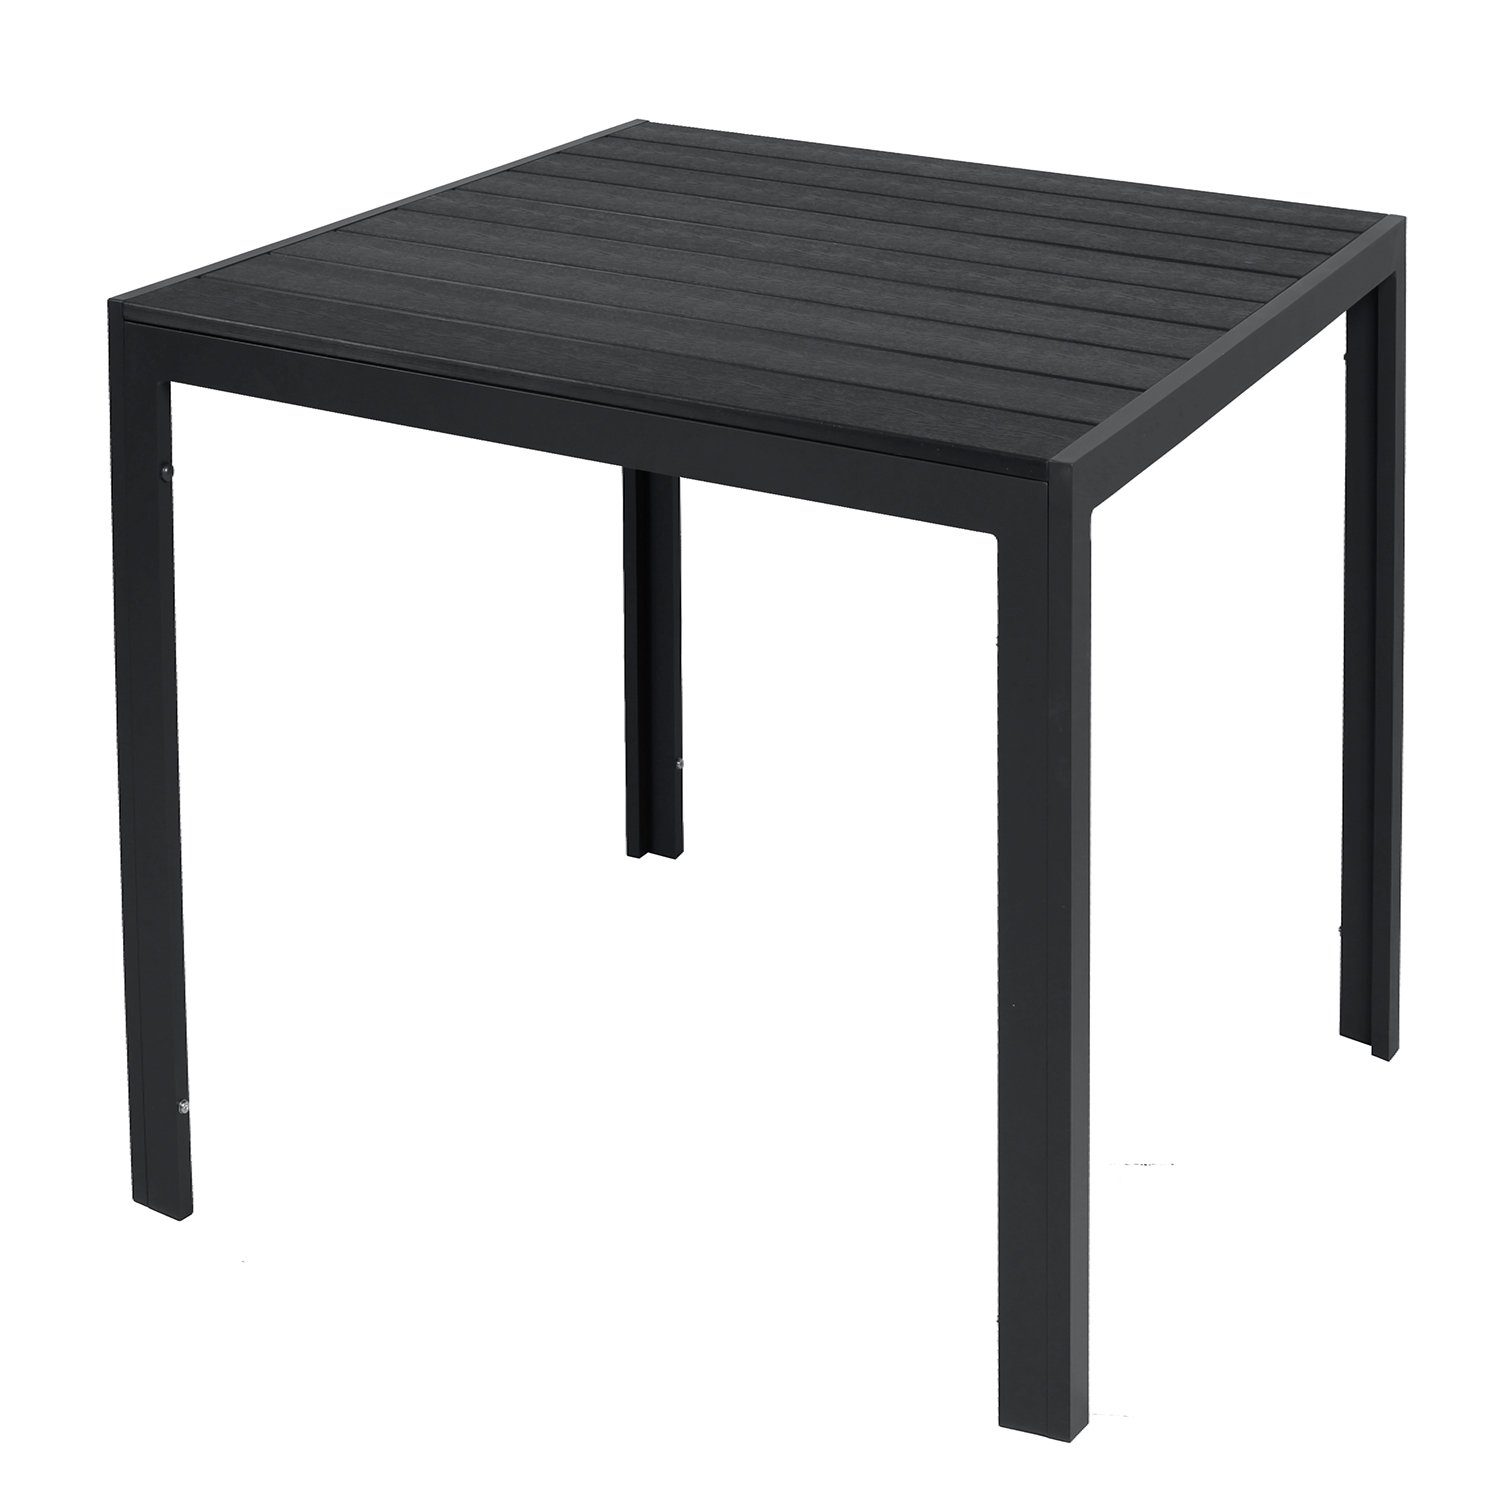 INDA-Exclusiv Küchentisch Non-Wood Gartentisch / schwarz anthrazit 80x80cm Aluminium